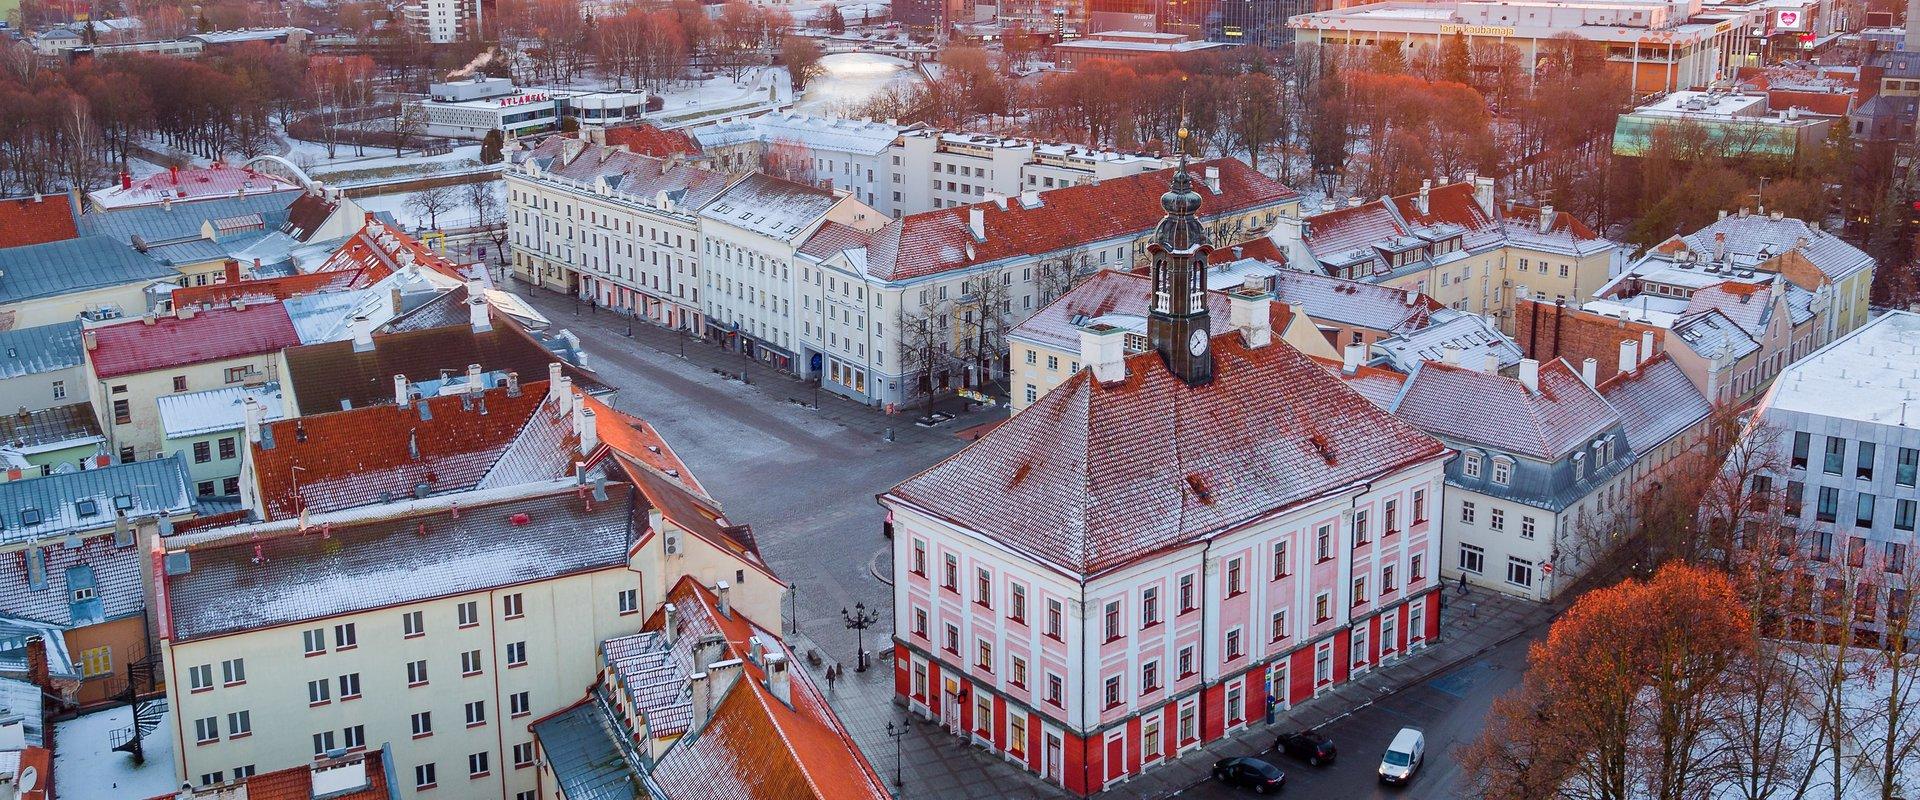 Rathausplatz in Tartu